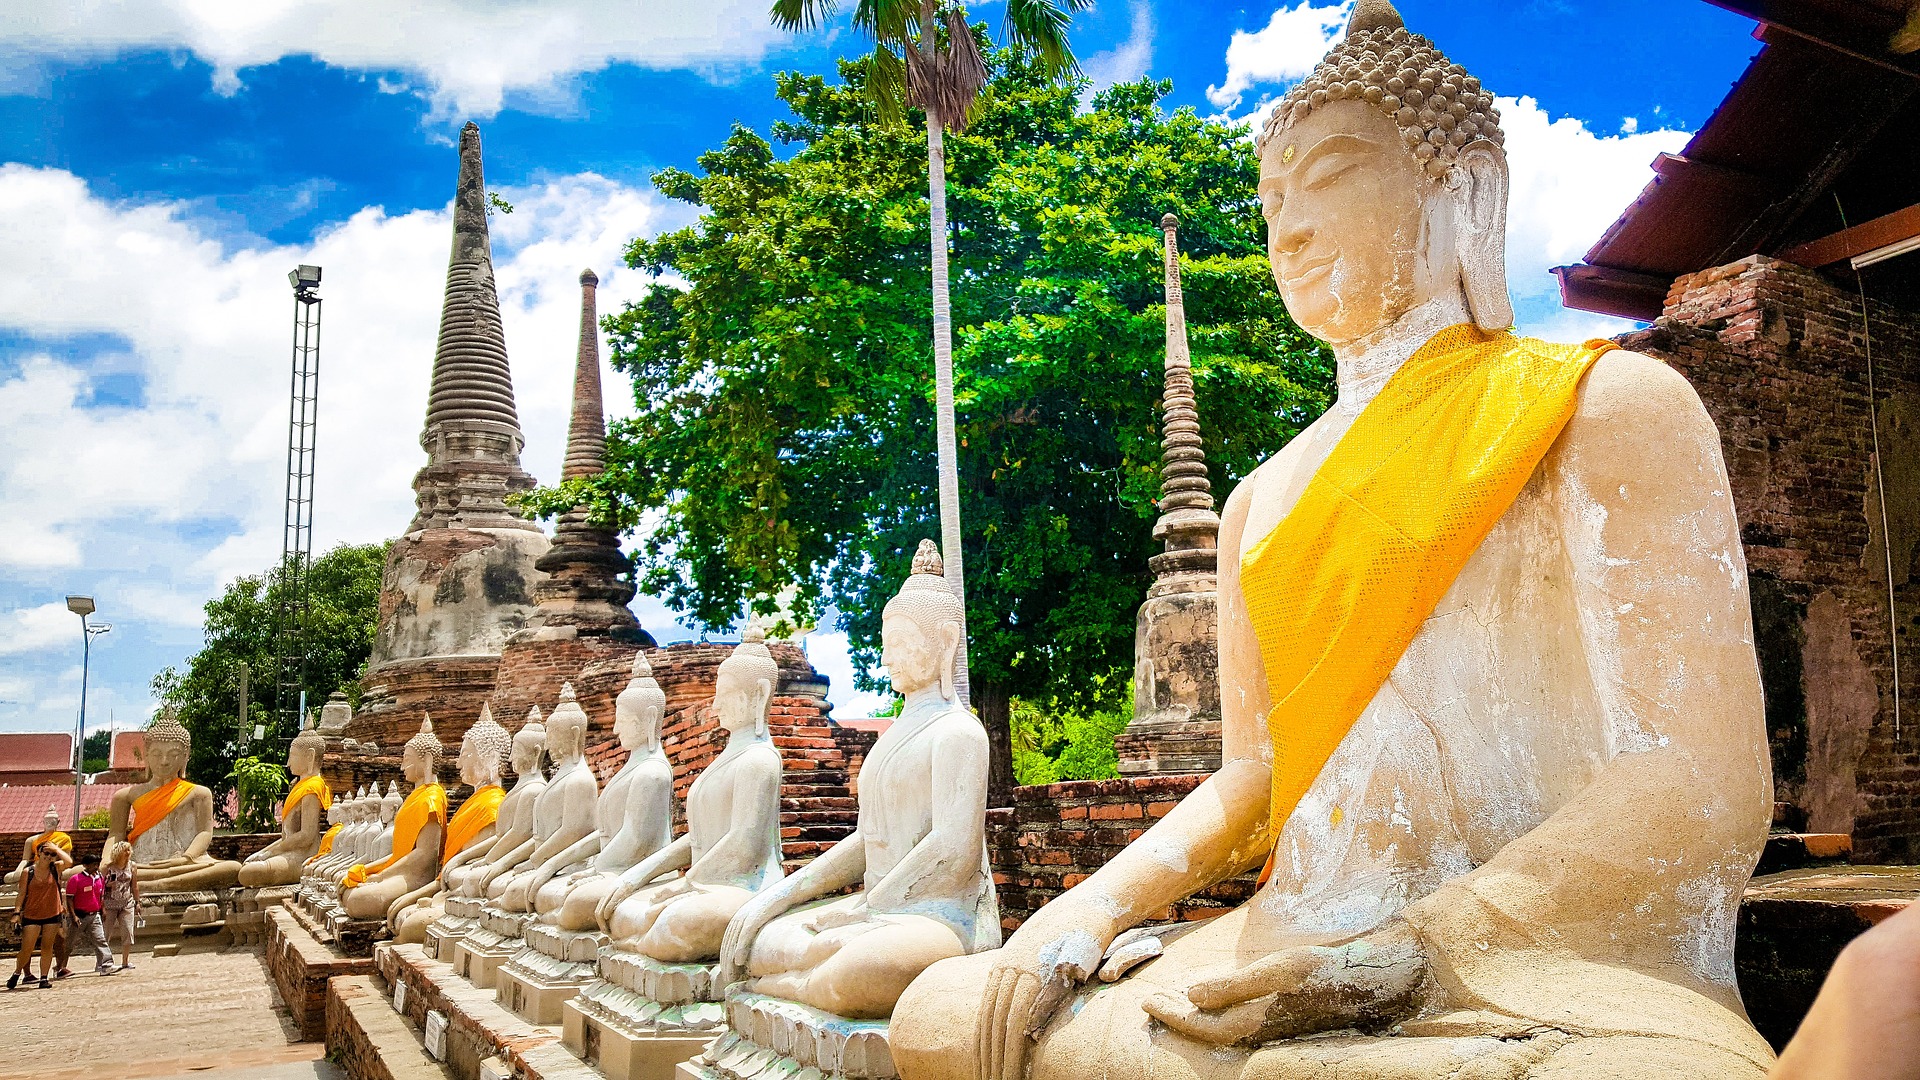 Inscrite au patrimoine mondial de l’UNESCO, la ville d'Ayutthaya regorge de pépites et nombreux temples anciens. Un peu comme peut l'être Angkor Wat au Cambodge, vous allez apprécier une richesse d'un temps ancienne et d'une époque révolue.